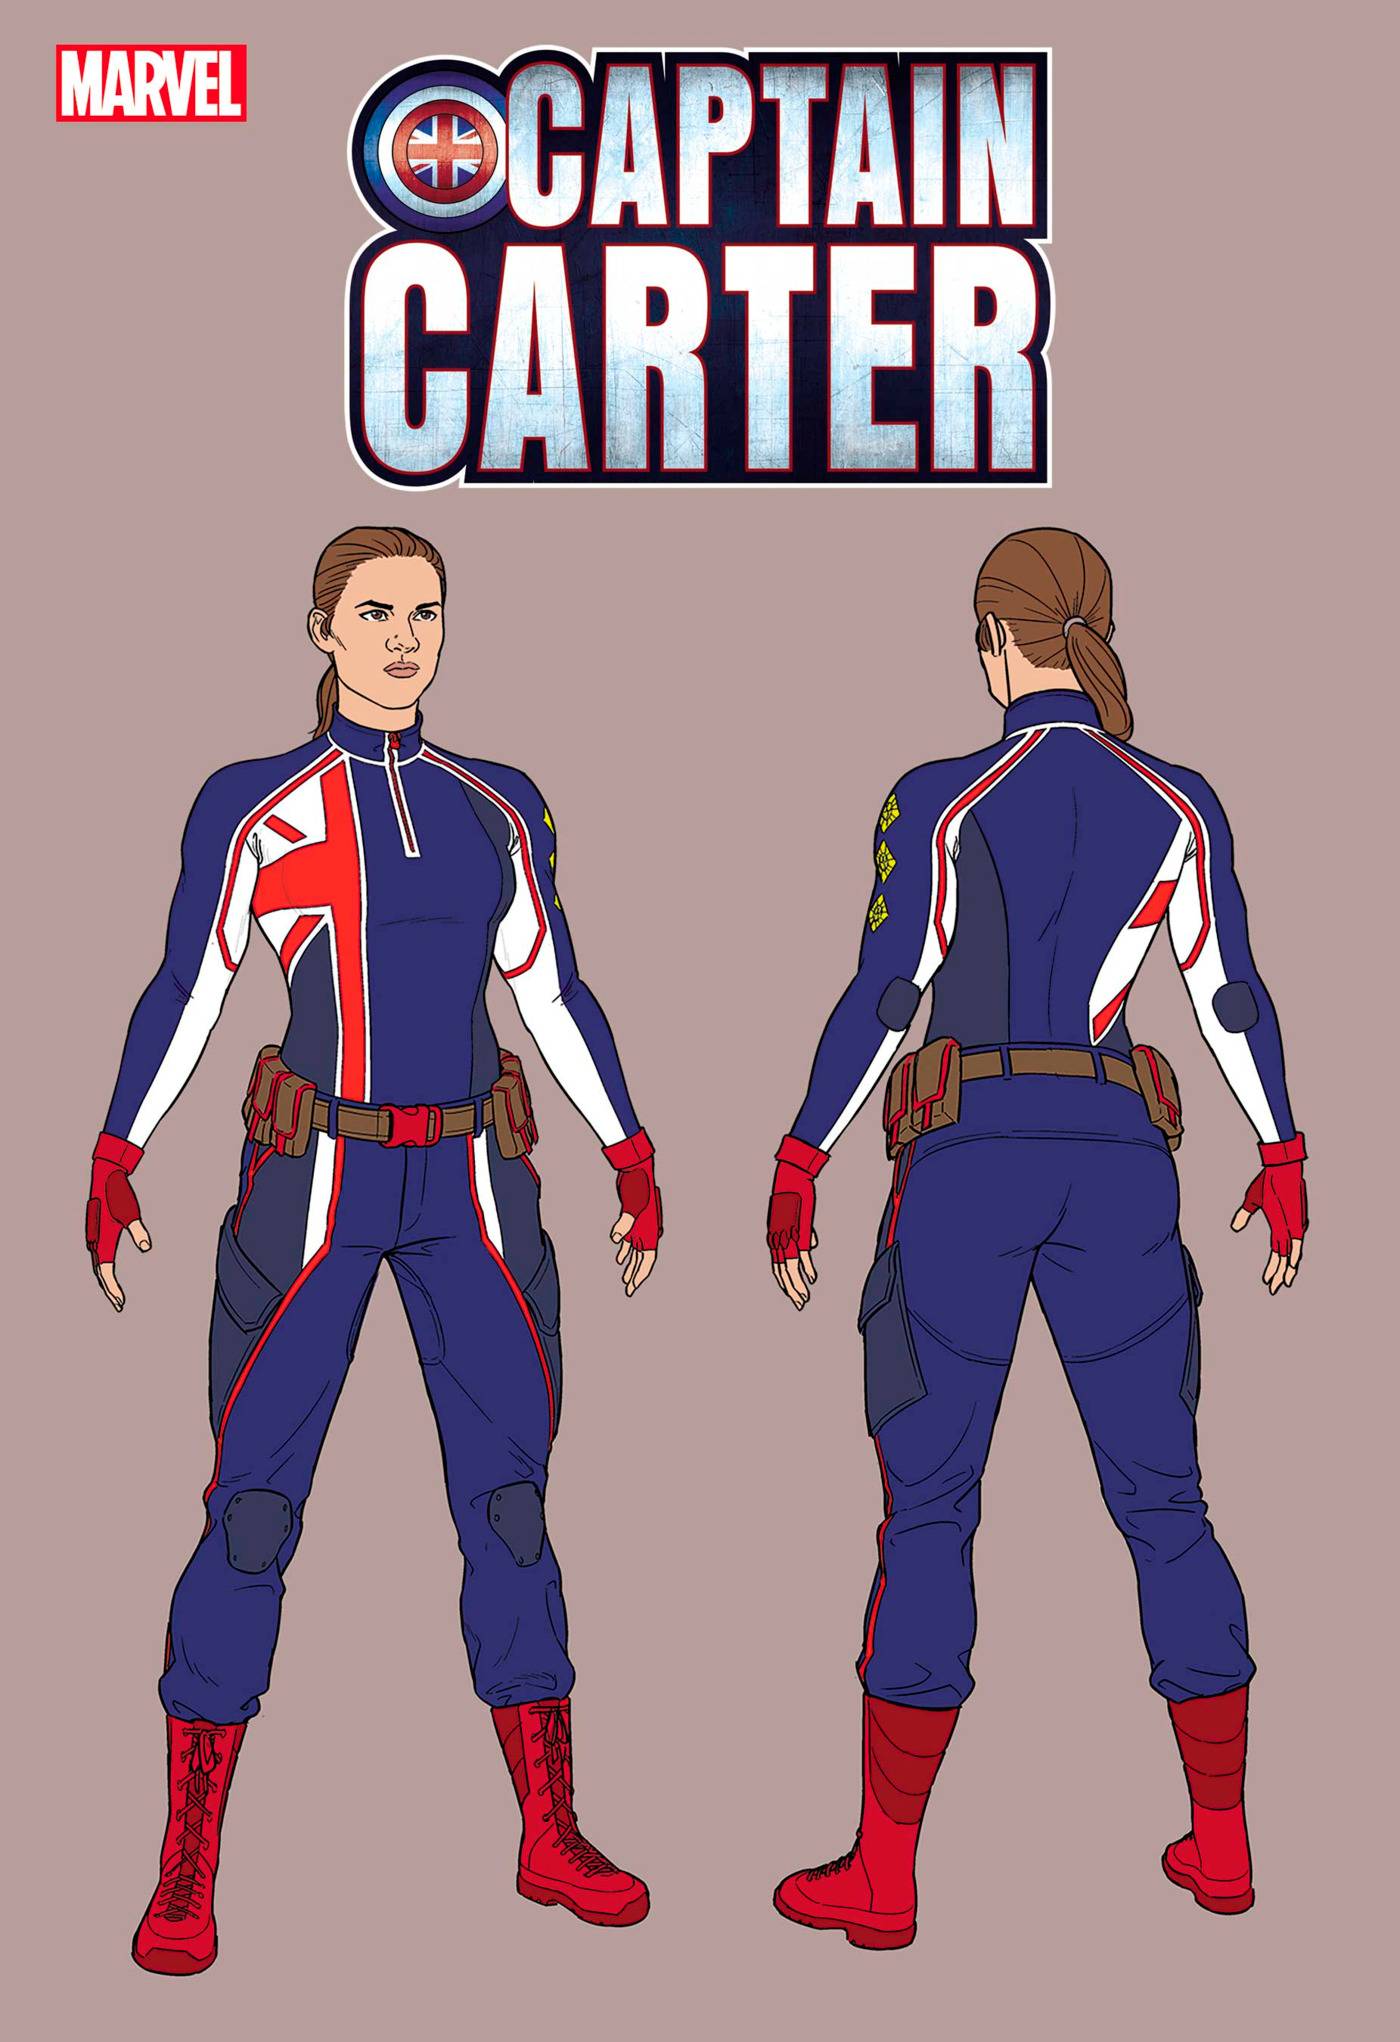 CAPTAIN CARTER